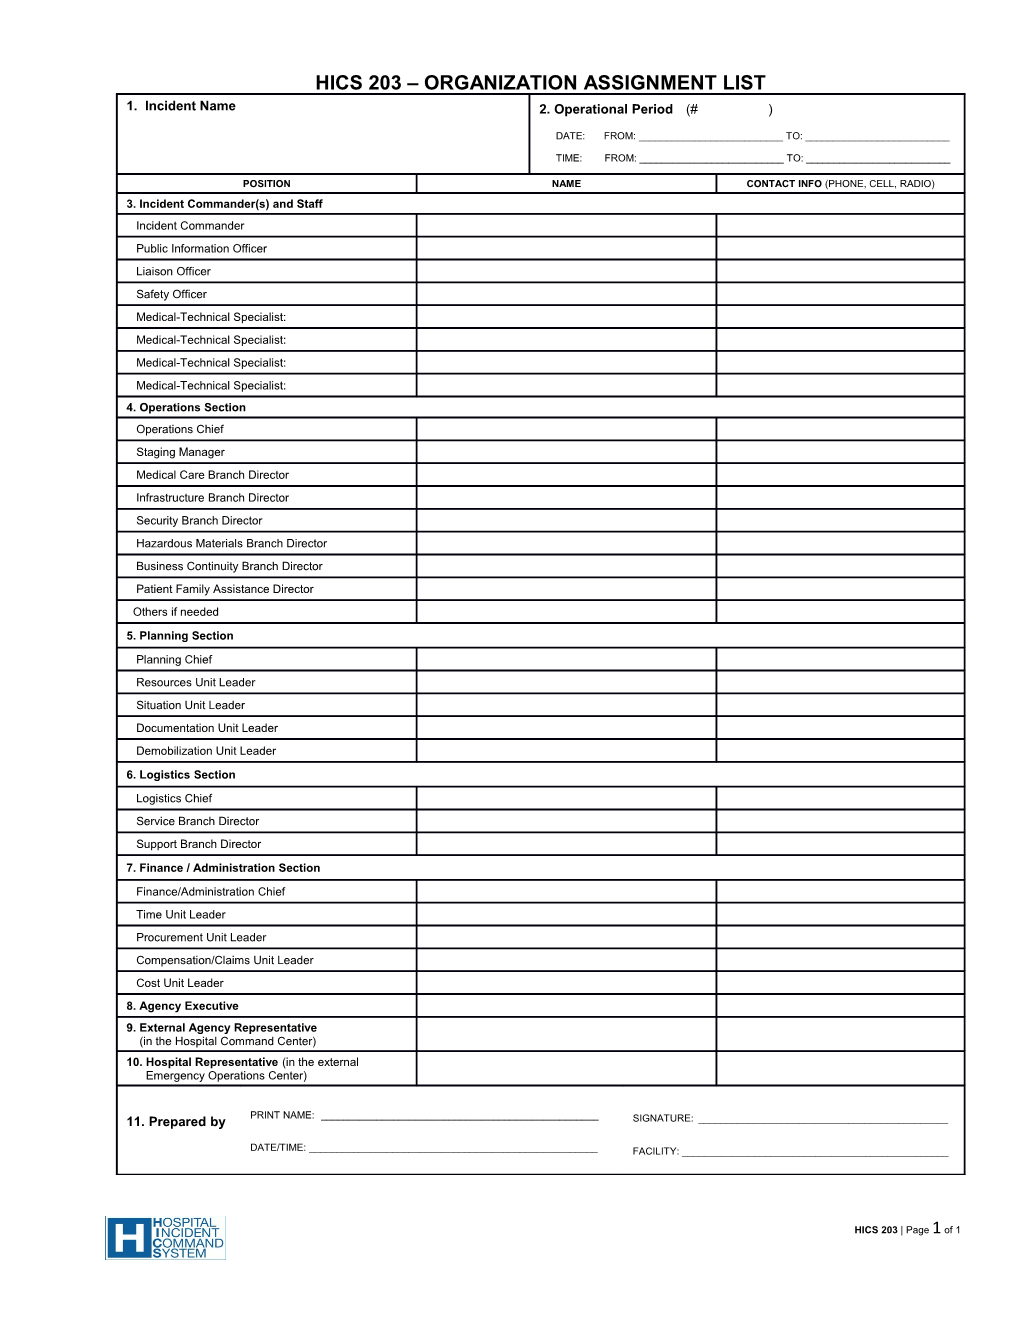 HICS 203-Organization Assignment List